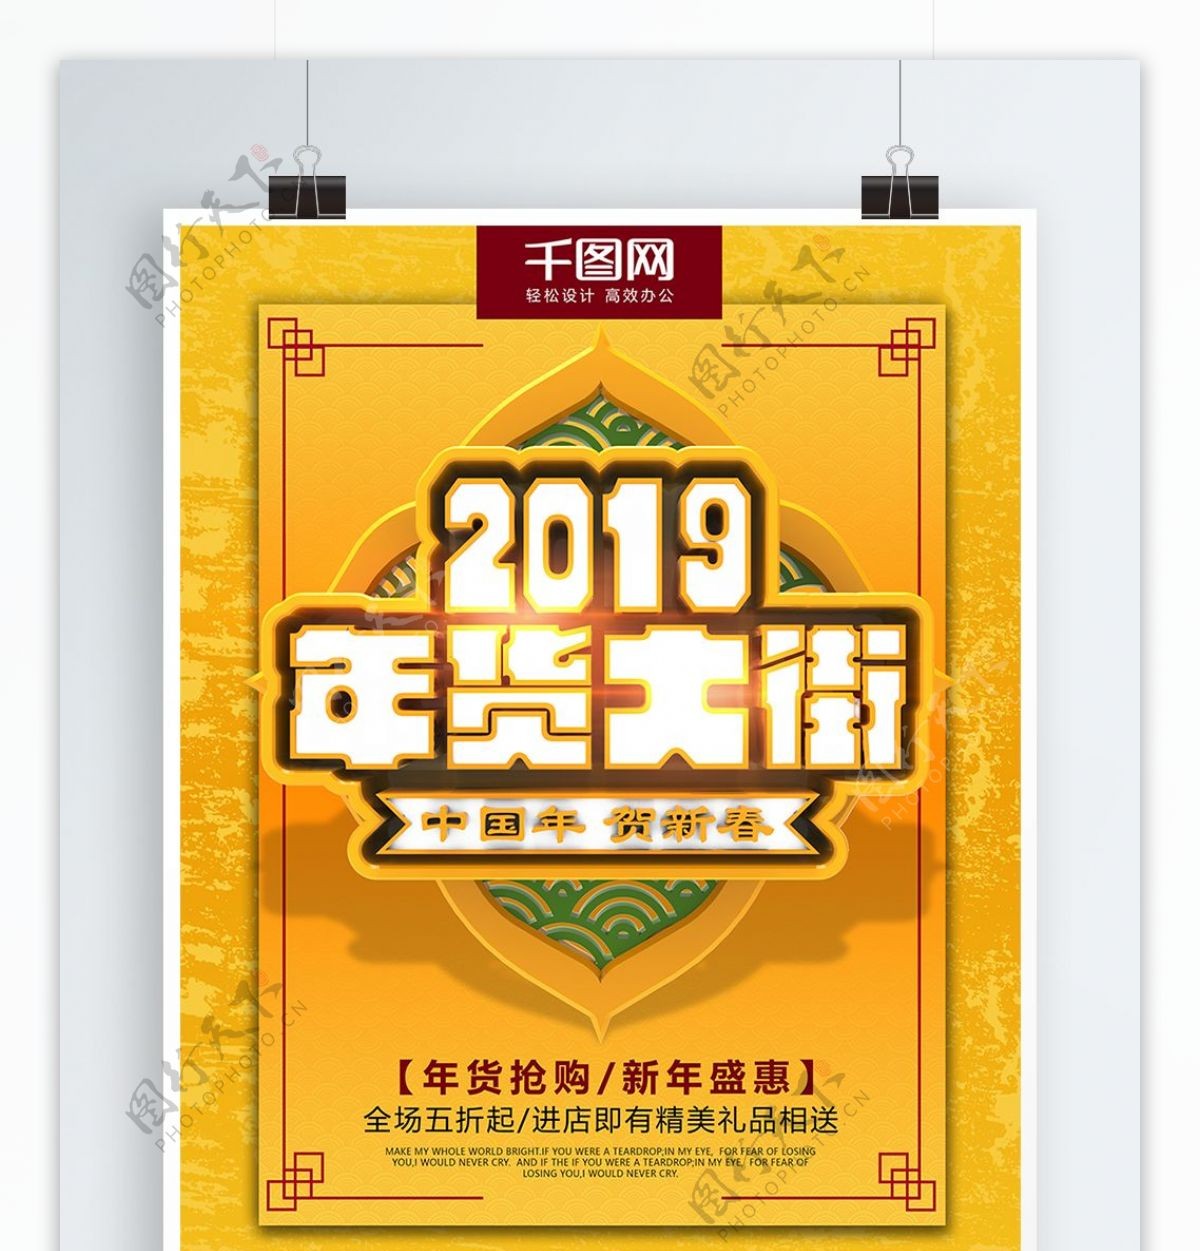 2019年商场年货大街年货节活动促销海报